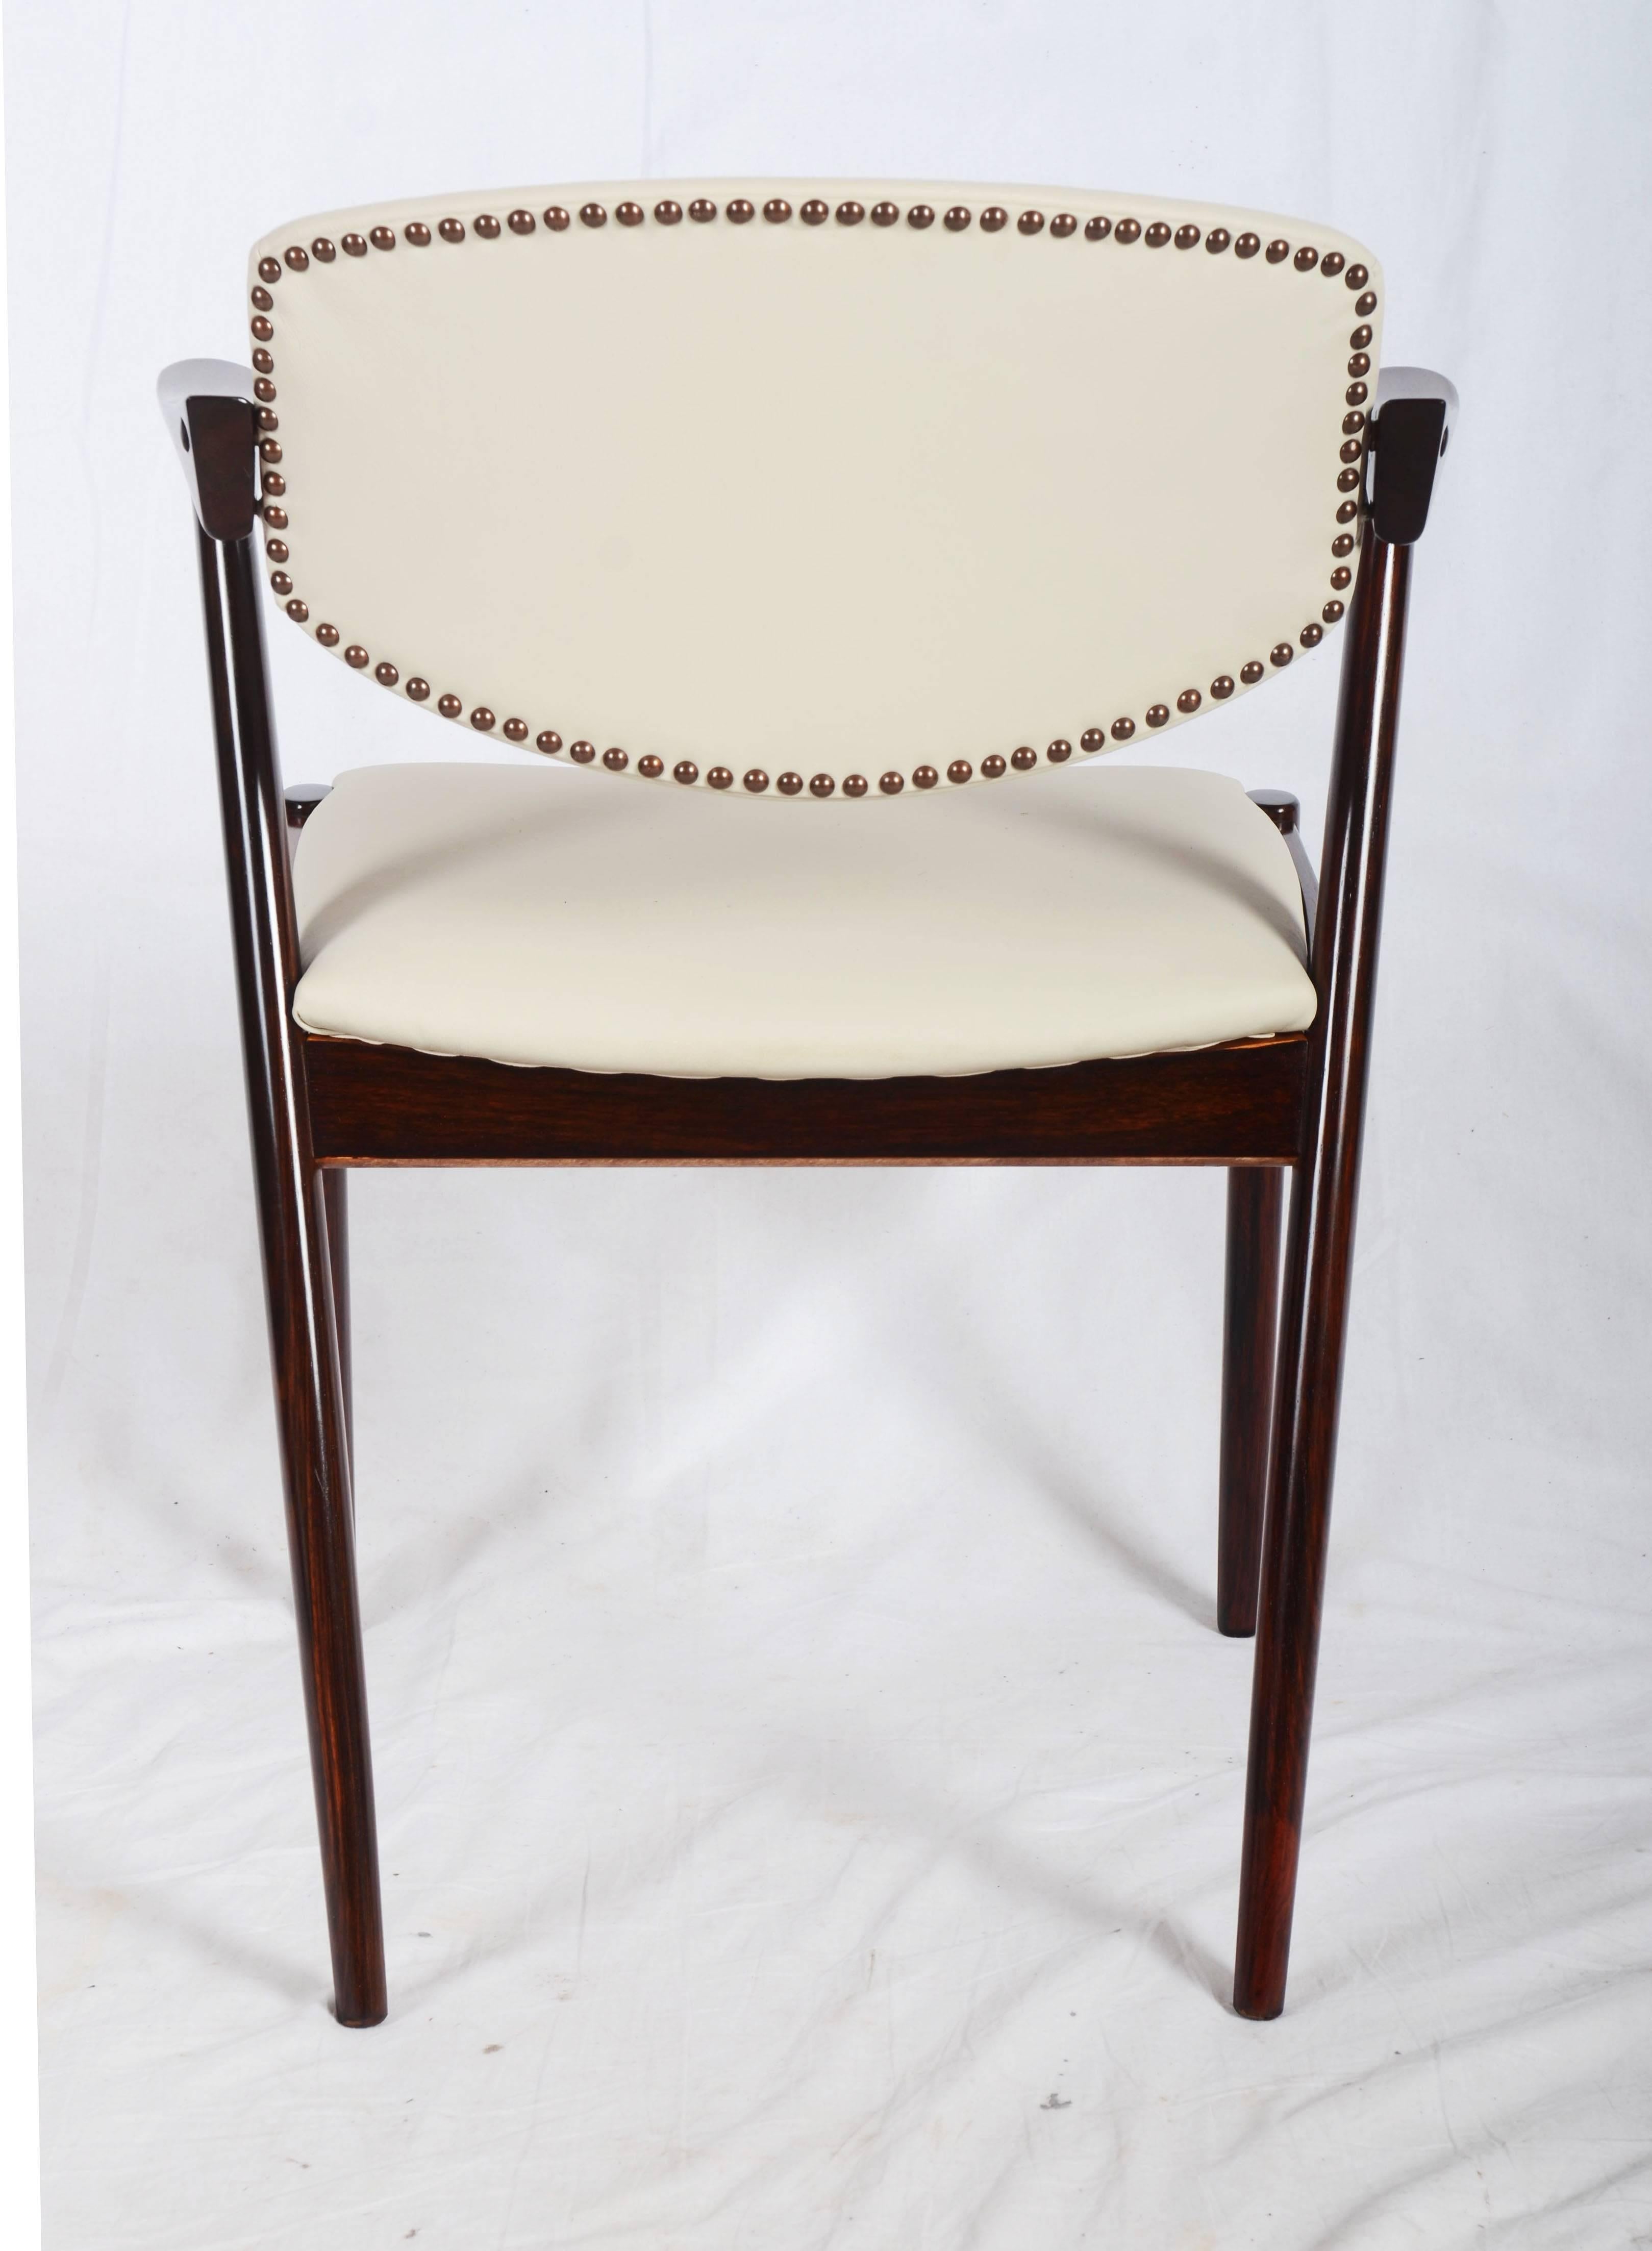 Esszimmerstühle, Modell 42, entworfen von Kai Kristiansen und hergestellt in Dänemark von Schou Andersen Møbelfabrik. Die Stühle sind aus massivem Hartholz gefertigt, haben konisch zulaufende Beine, geschwungene Armlehnen und eine cremefarbene